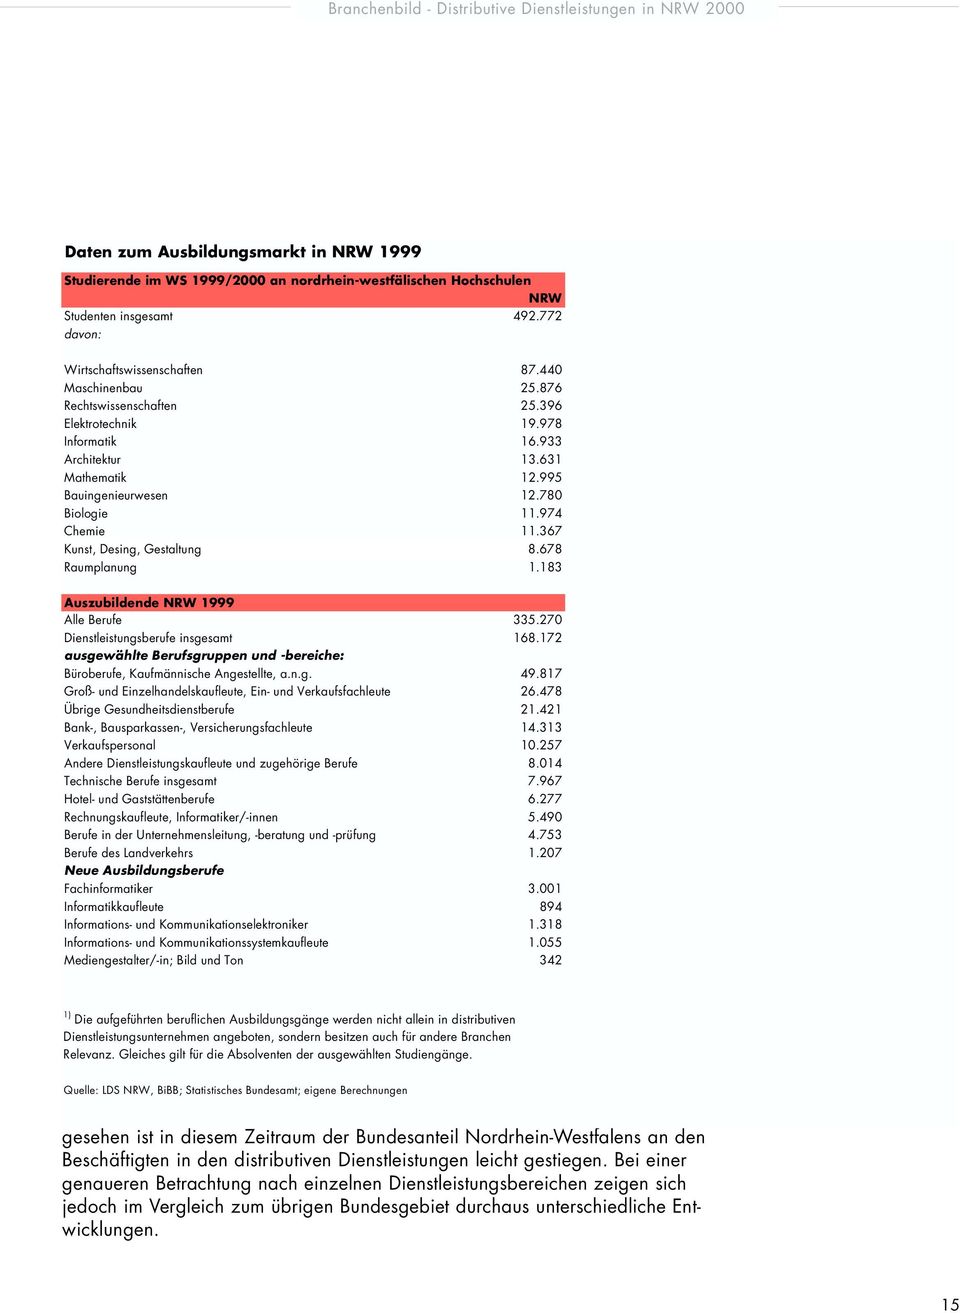 678 Raumplanung 1.183 Auszubildende NRW 1999 Alle Berufe 335.270 Dienstleistungsberufe insgesamt 168.172 ausgewählte Berufsgruppen und -bereiche: Büroberufe, Kaufmännische Angestellte, a.n.g. 49.